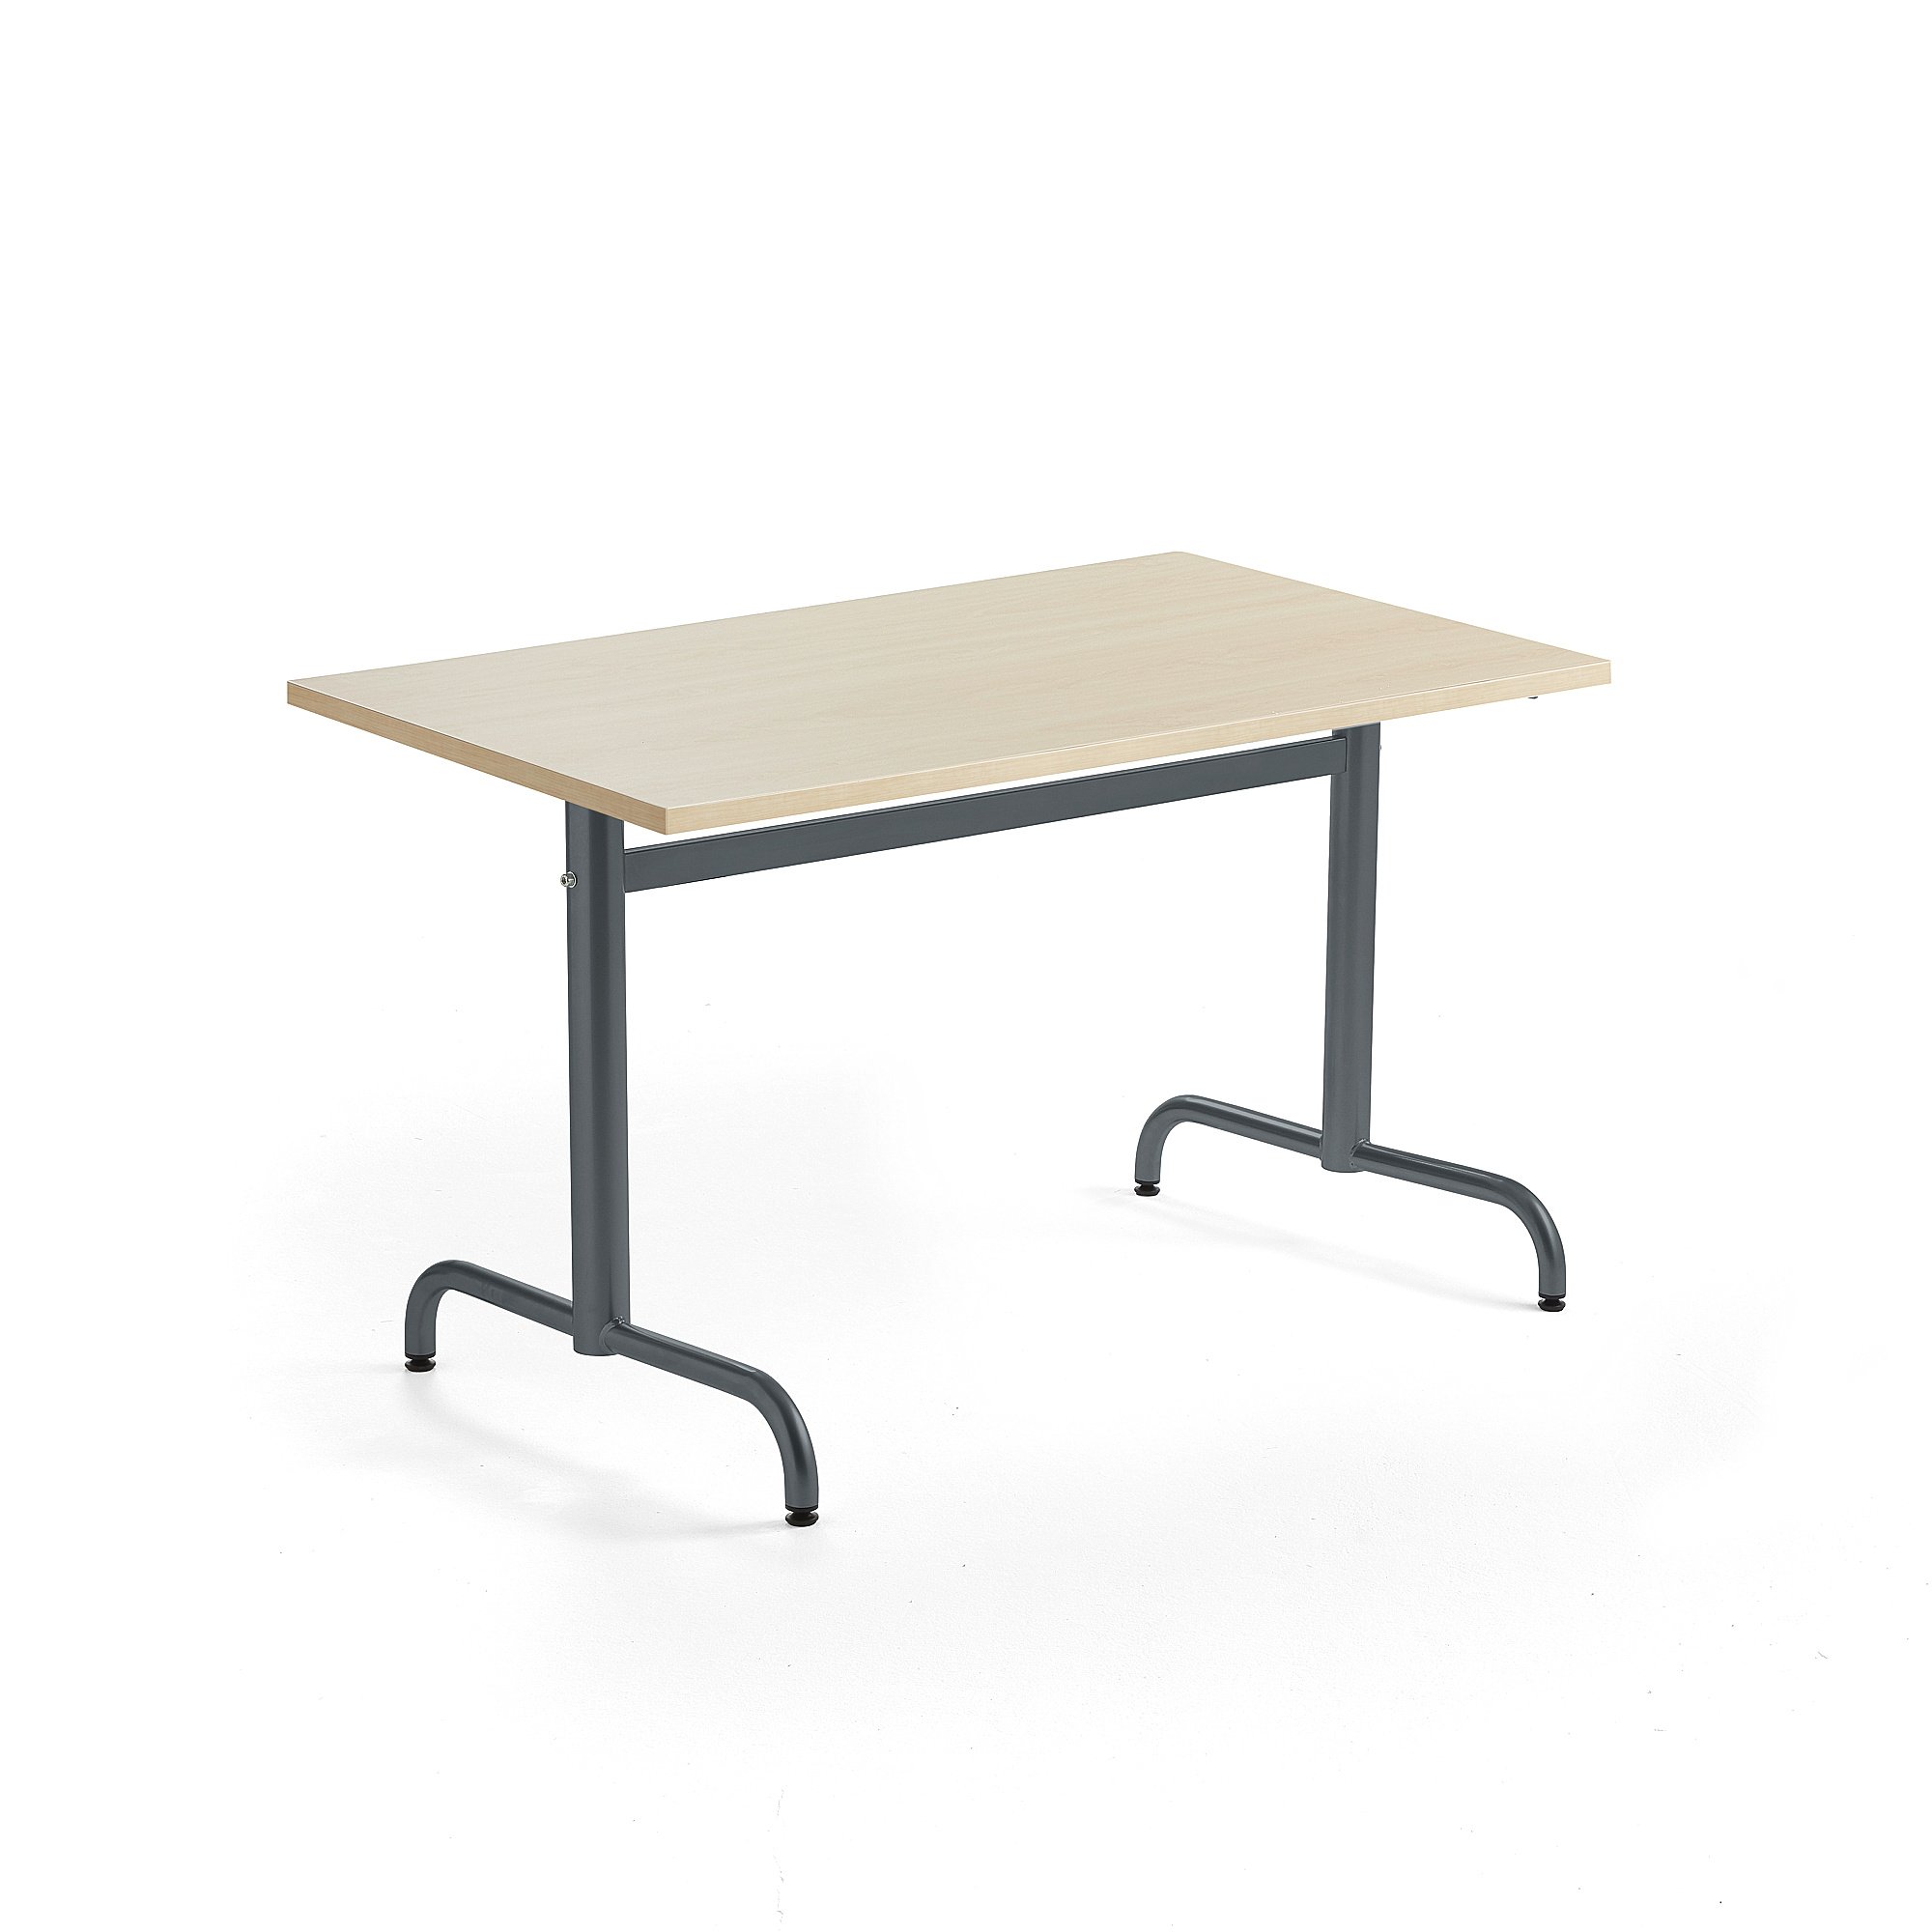 Stůl PLURAL, 1200x800x720 mm, akustická HPL deska, bříza, antracitově šedá